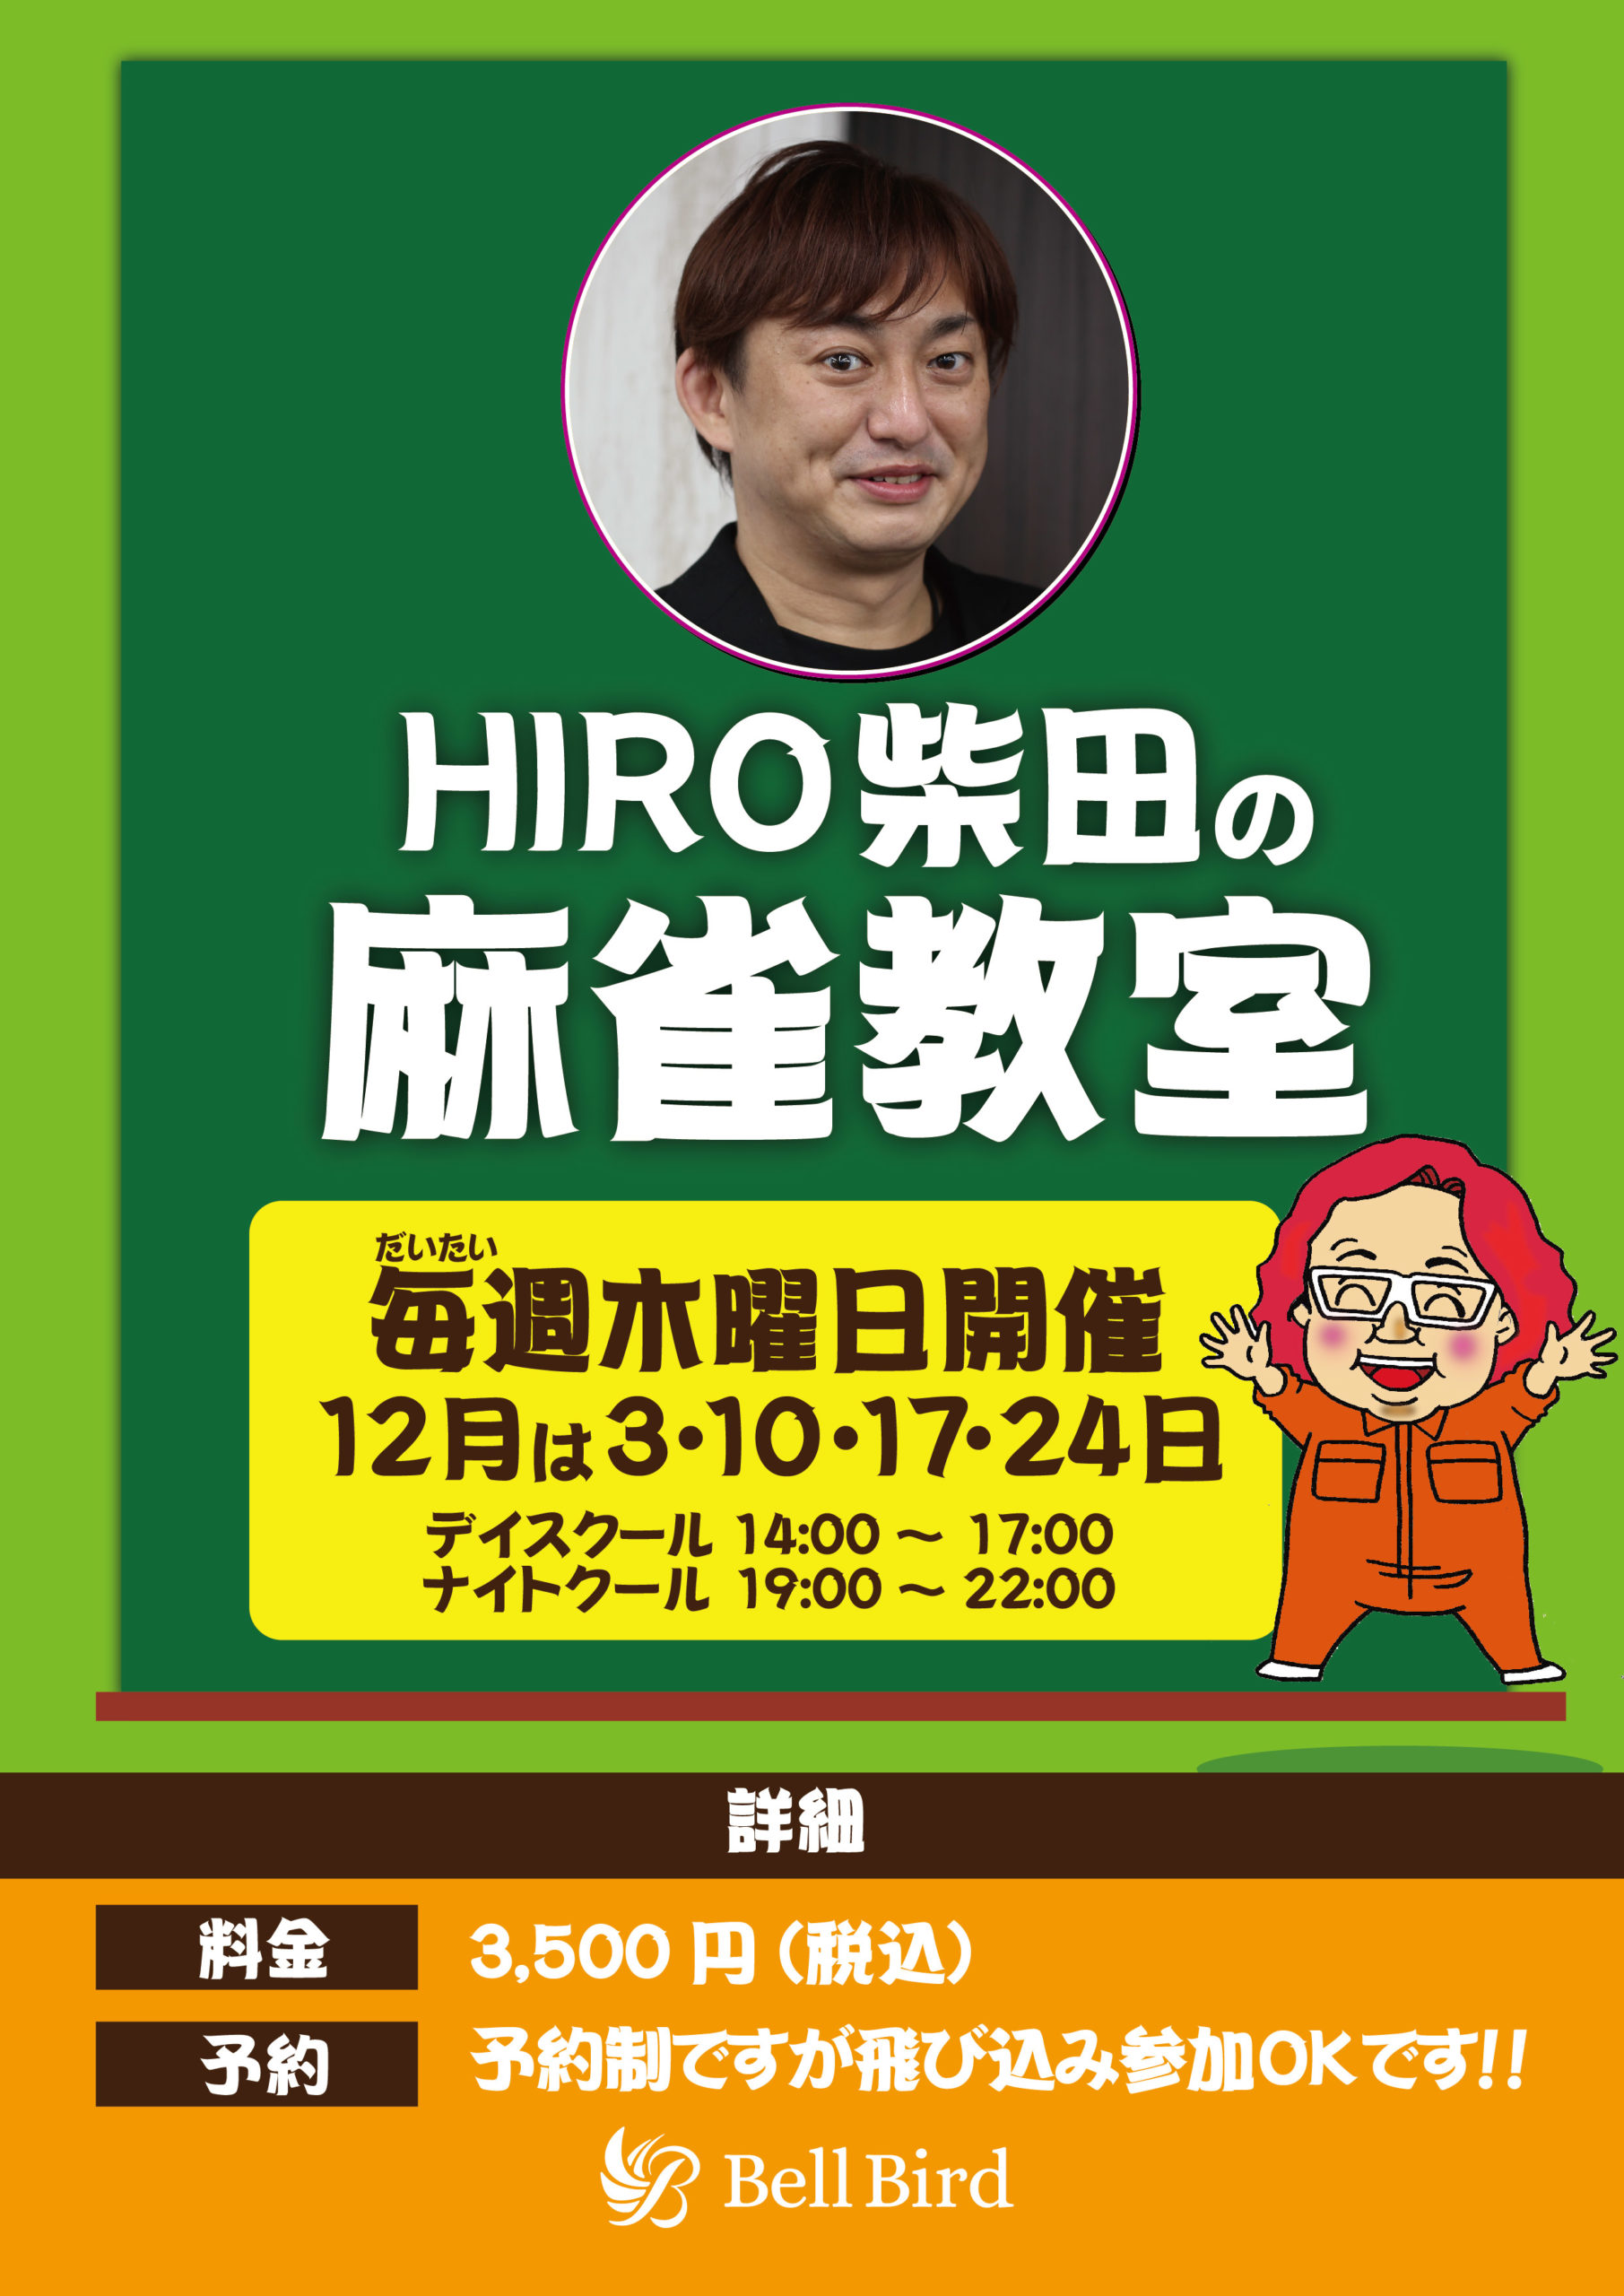 HIRO柴田202012_アートボード 1